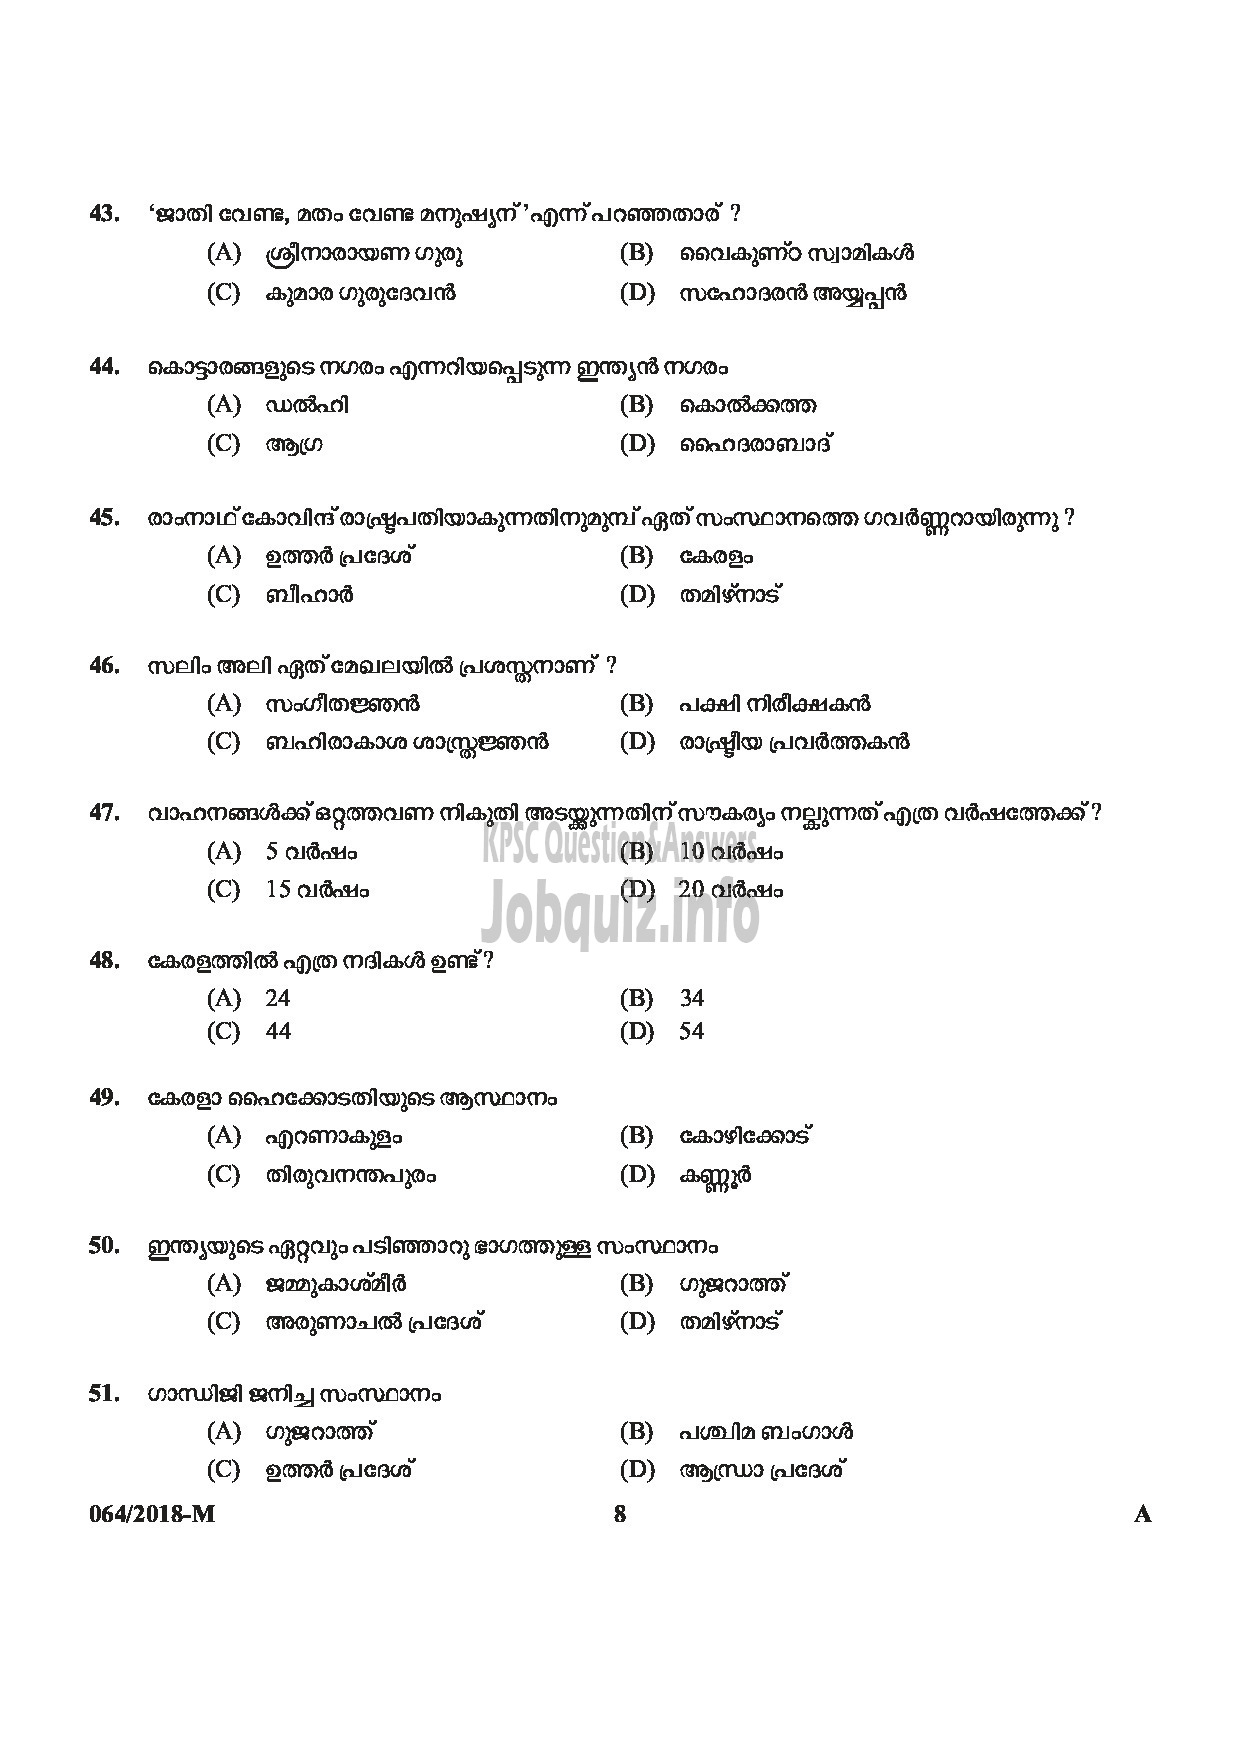 Kerala PSC Question Paper - LAST GRADE SERVANTS EXSERVICEMAN NCC SAINIK WELFARE-8